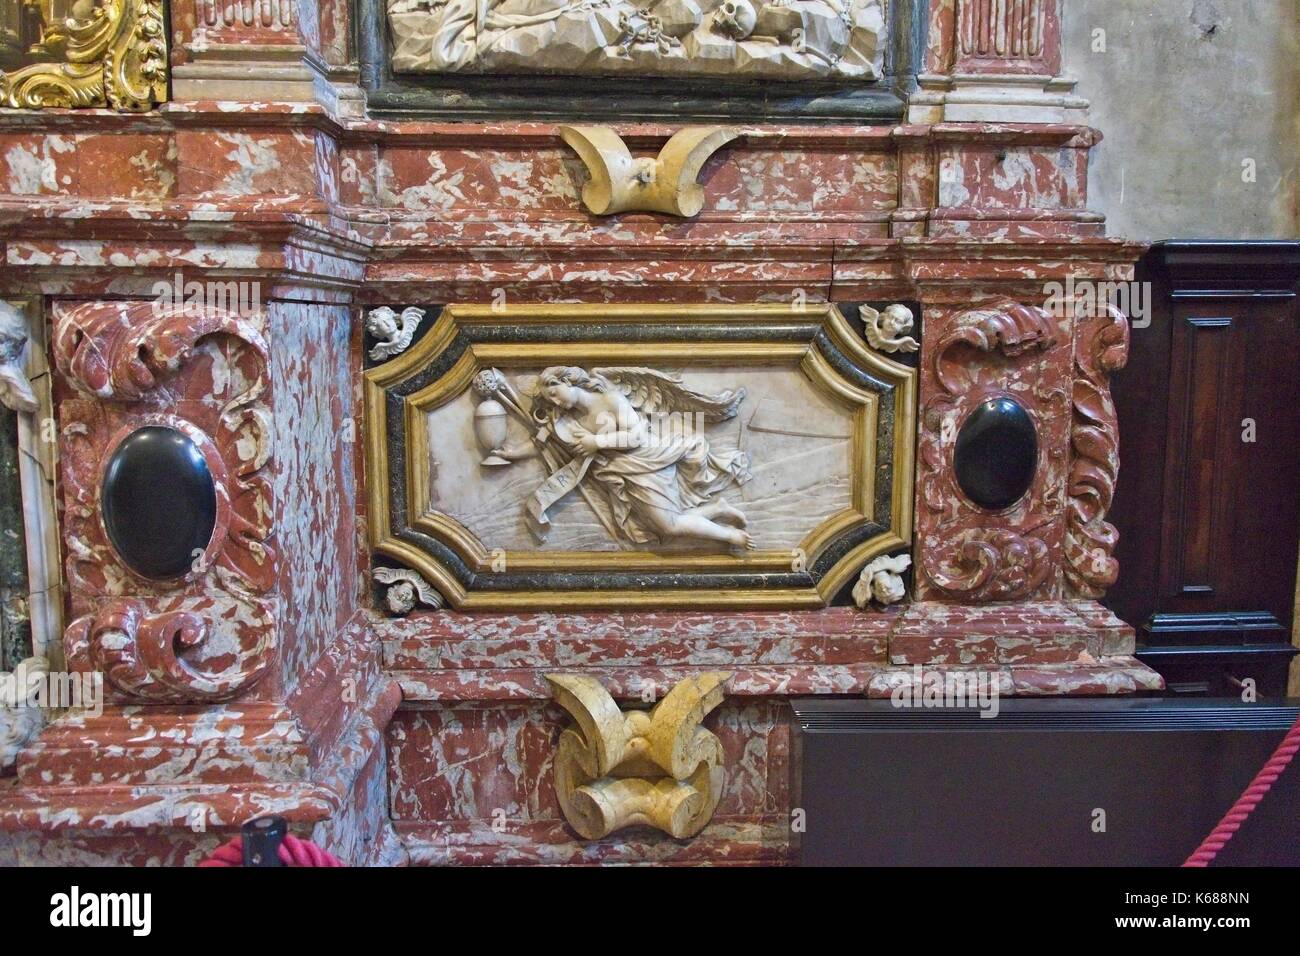 Venedig Veneto Italien. Basilika Santa Maria Gloriosa dei Frari (ICH), Innenraum. Altar der Reliquien detail. Dekoration von Francesco Cabianca, Carrara Marmor. Stockfoto